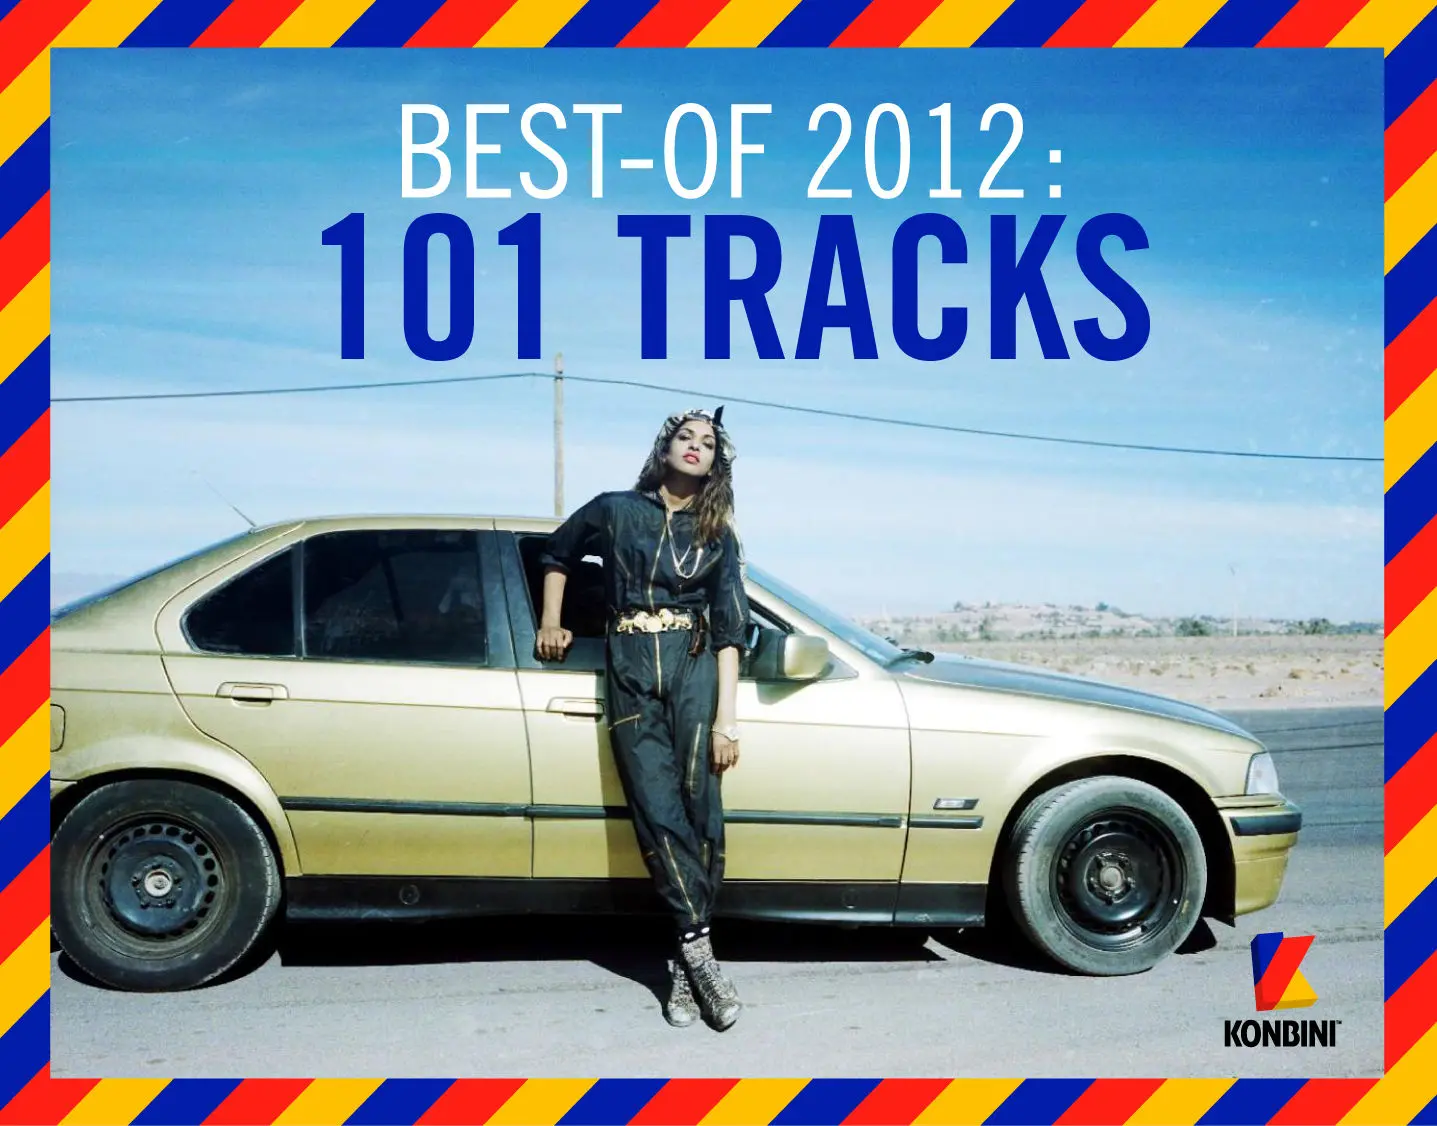 Les 101 meilleures chansons de l’année 2012 par Konbini